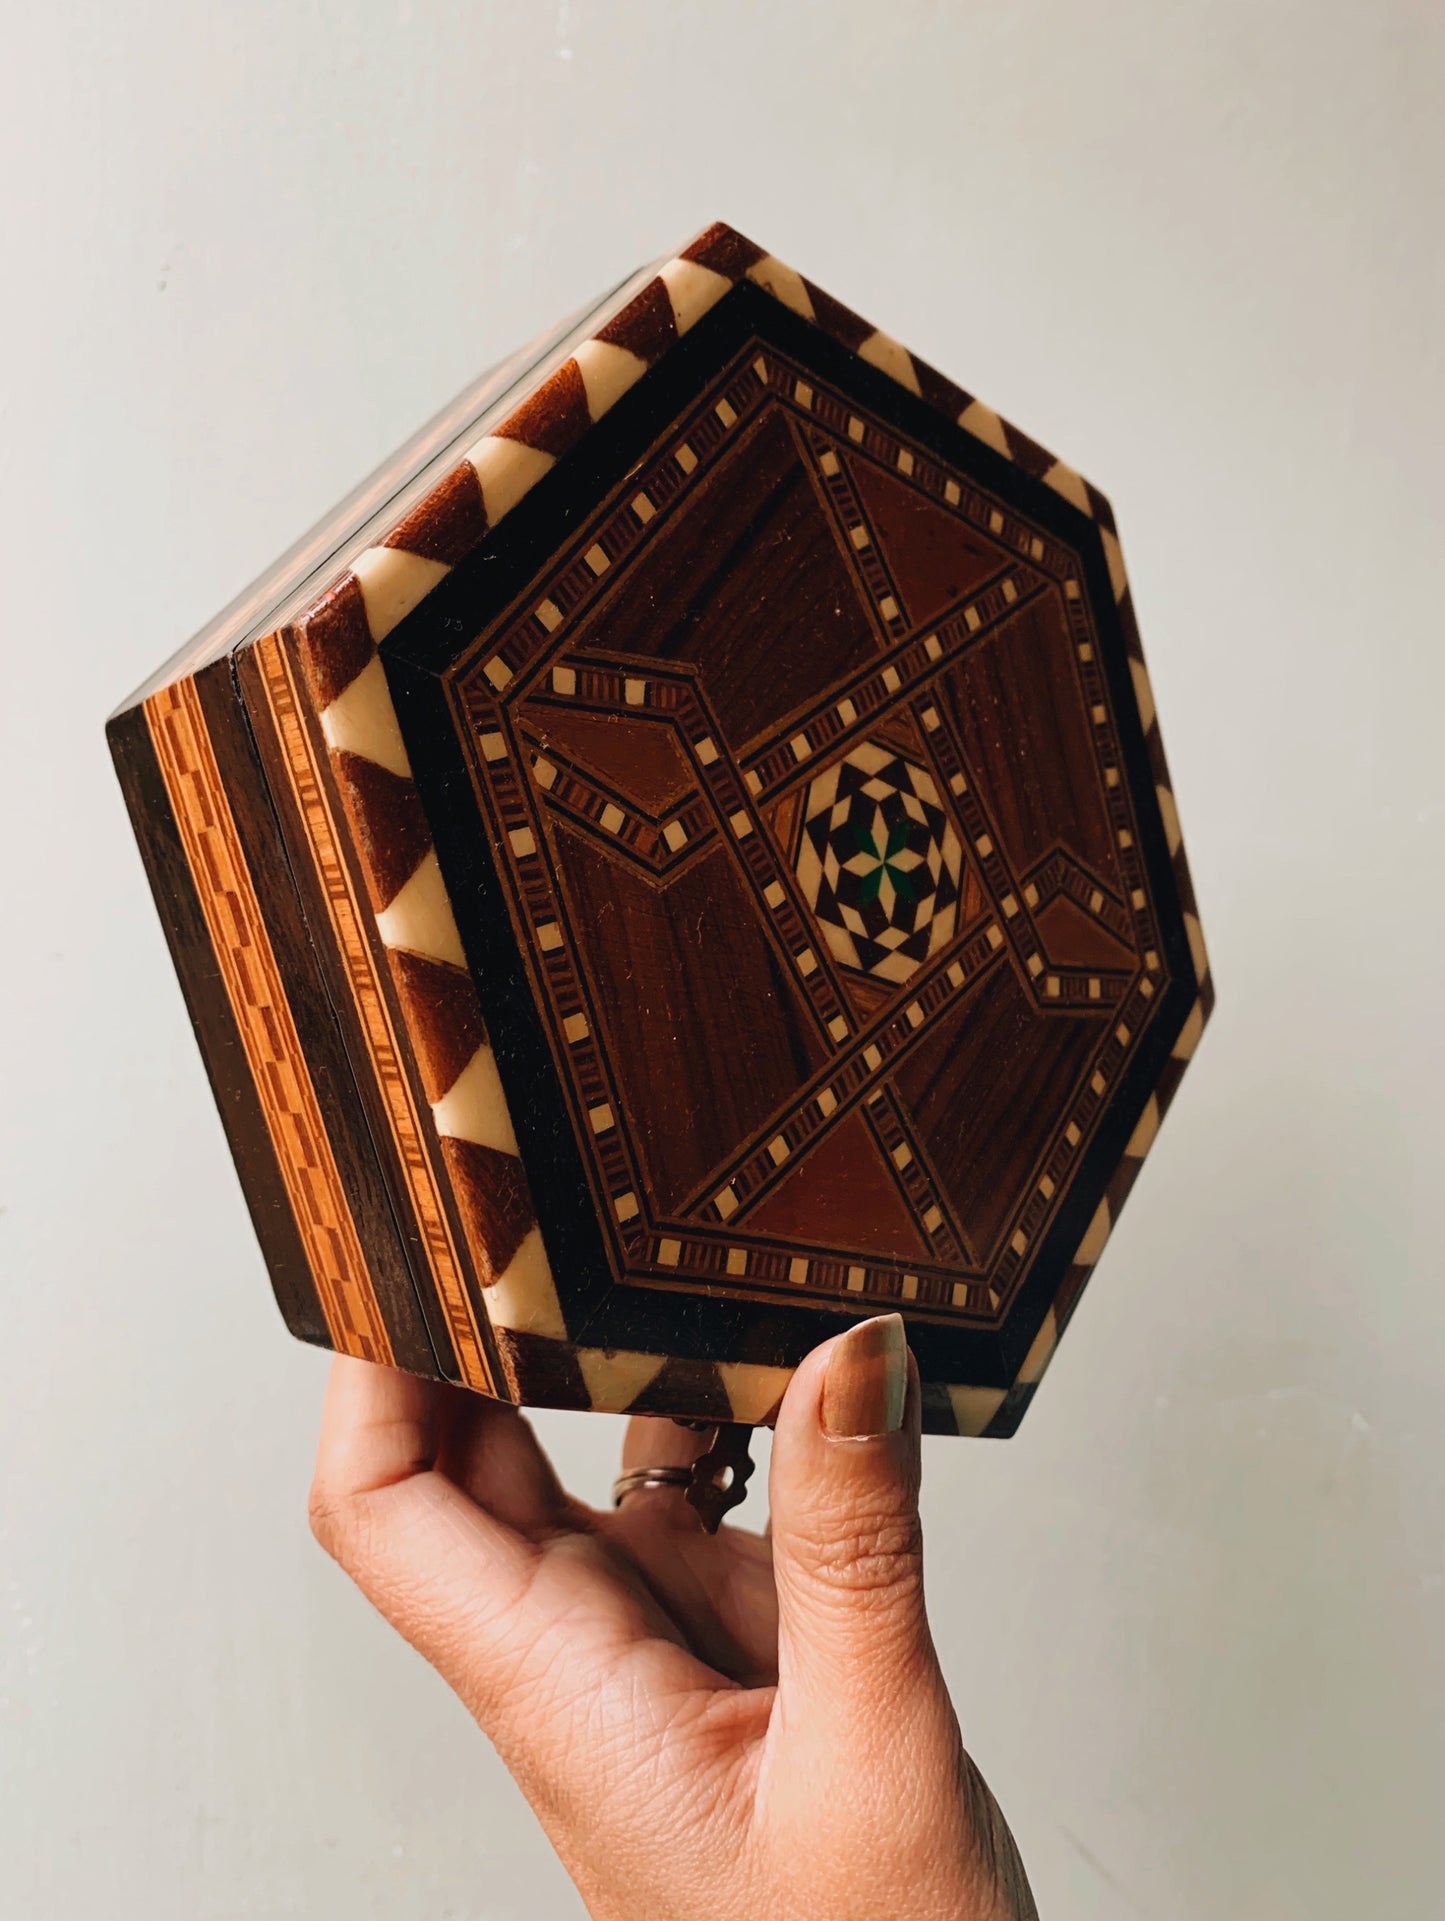 Vintage Wooden Parquet Decorative Box